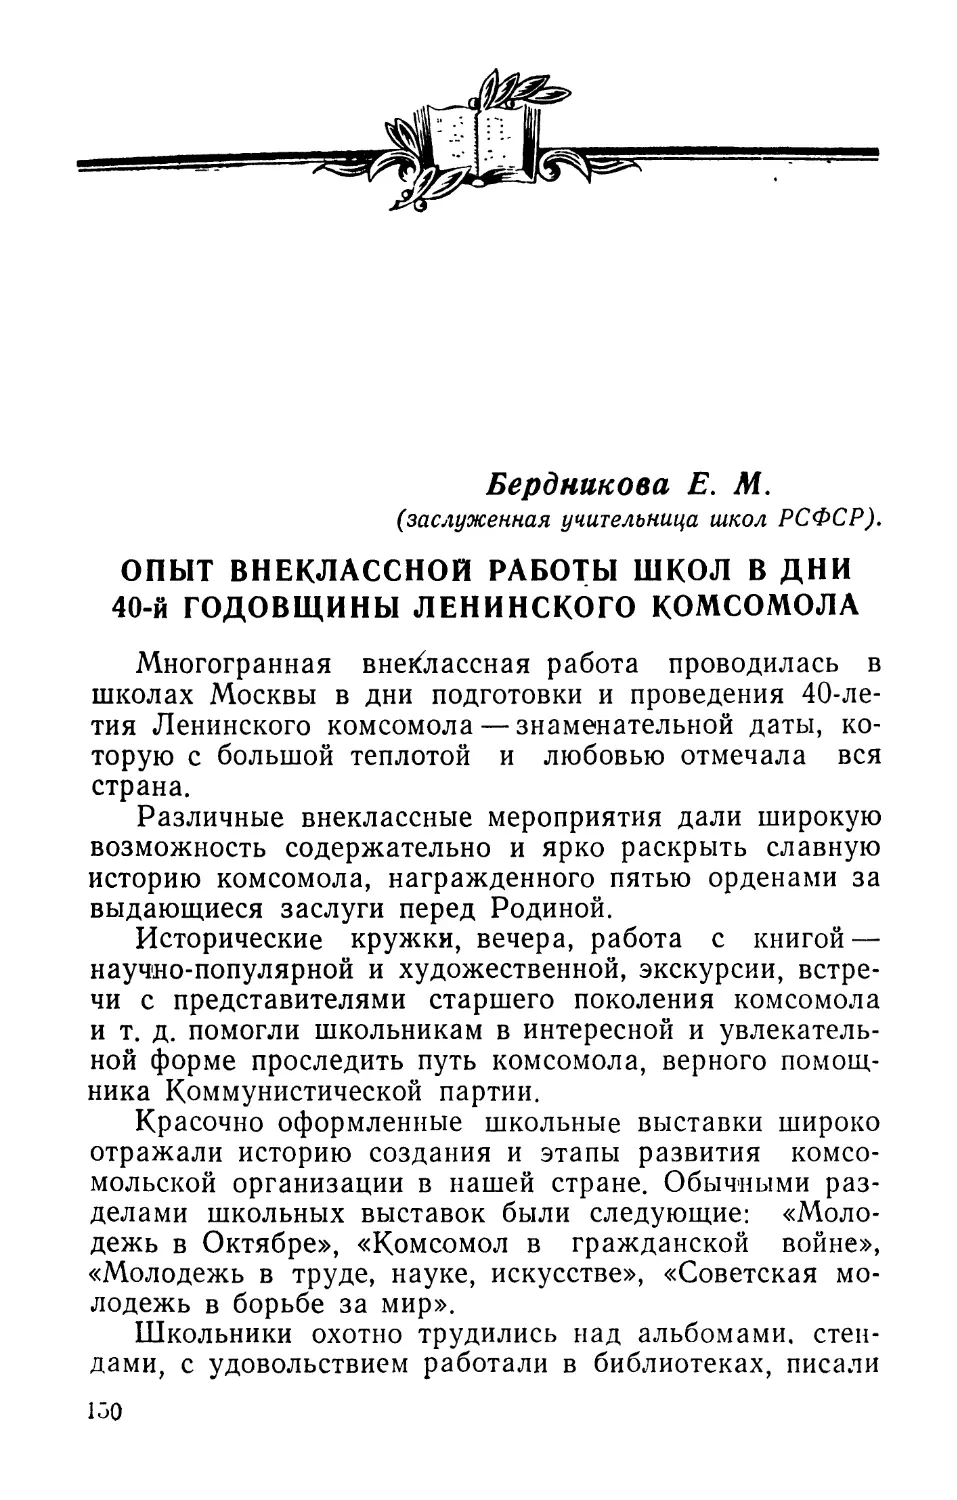 Бердникова  Е.М.  Опыт  внеклассной  работы  школы  в  дни 40-й  годовщины  Ленинского  комсомола